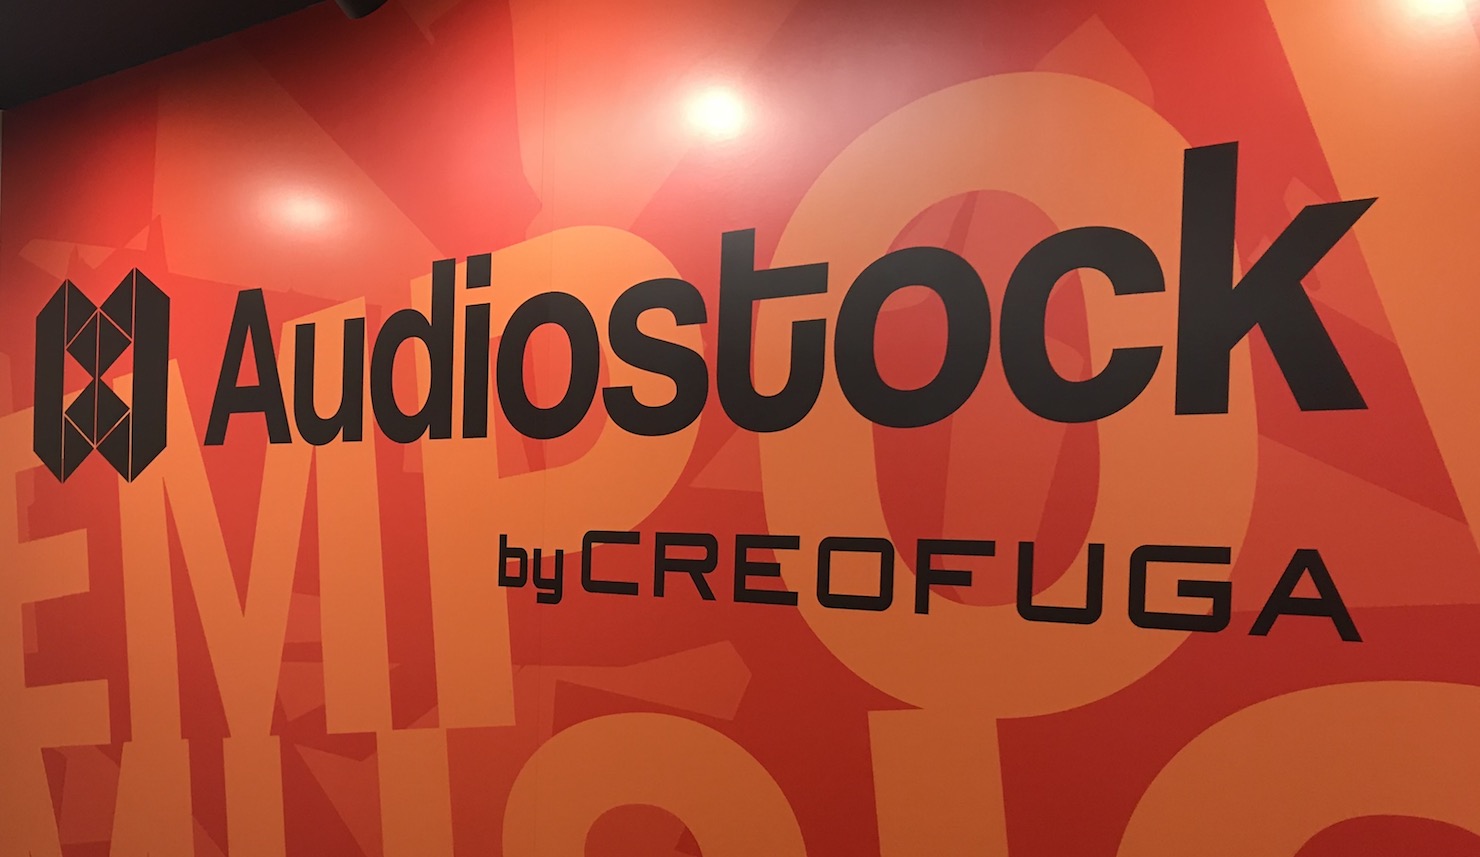 DTMユーザー必見 Audiostockで上位を狙って無料でAudiostock studioを利用しよう